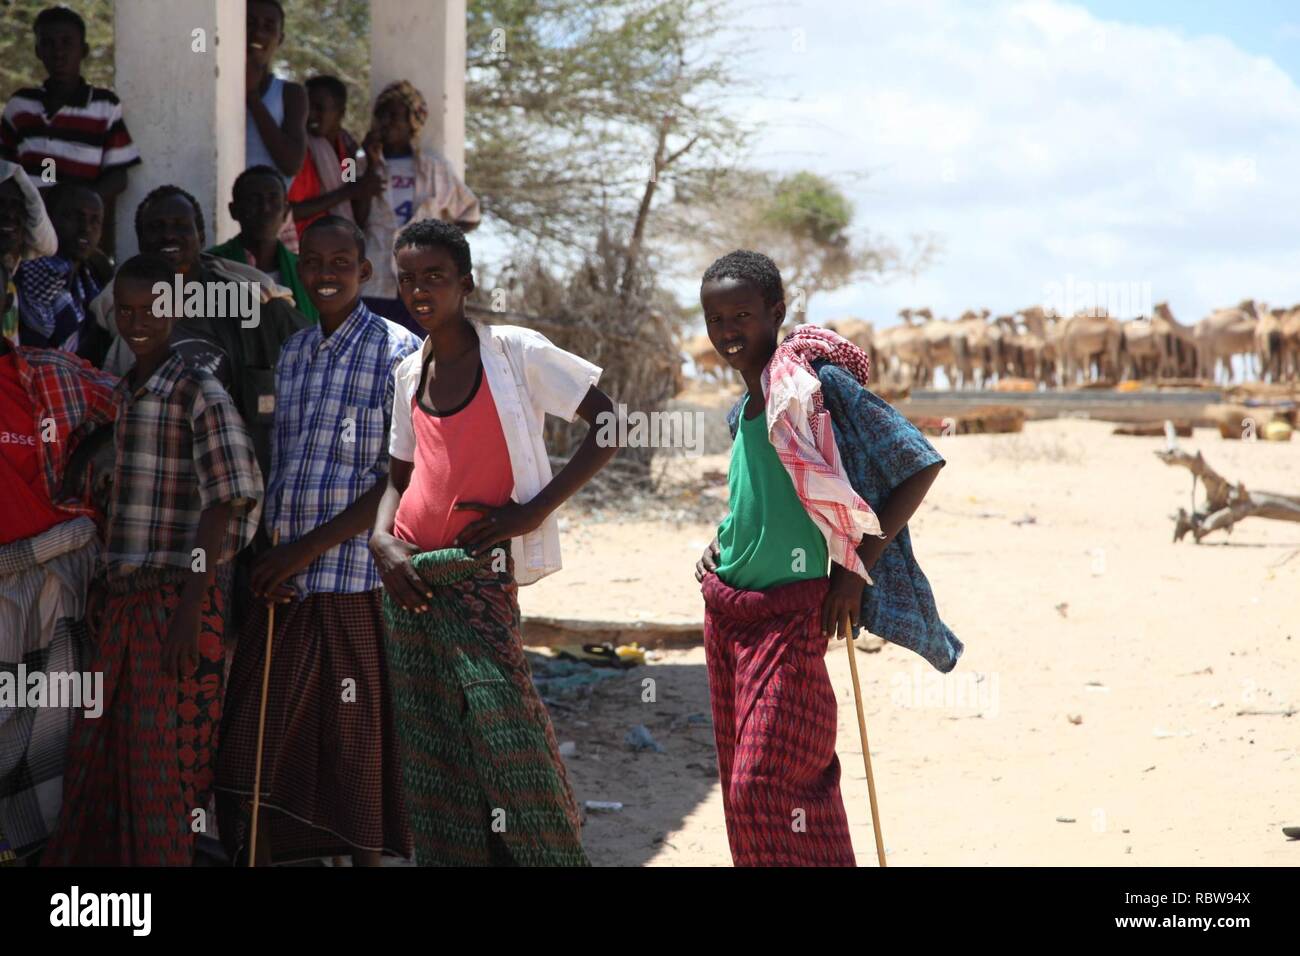 Un groupe de jeunes hommes se tenir devant des chameaux dans la ville d'Adale, en Somalie. Des soldats burundais, dans le cadre de la Mission de l'Union africaine en Somalie, hier, ont libéré la ville d'Adale dans la région du Moyen-Shabelle de la Somalie le groupe militant d'Al Shabab. La ville est prise sans résistance le 3 octobre. Photo de l'AMISOM Un groupe de jeunes hommes se tenir devant des chameaux dans la ville d'Adale, en Somalie. Des soldats burundais, dans le cadre de la Mission de l'Union africaine en Somalie, hier, ont libéré la ville d'Adale au milieu (15431624921). Banque D'Images